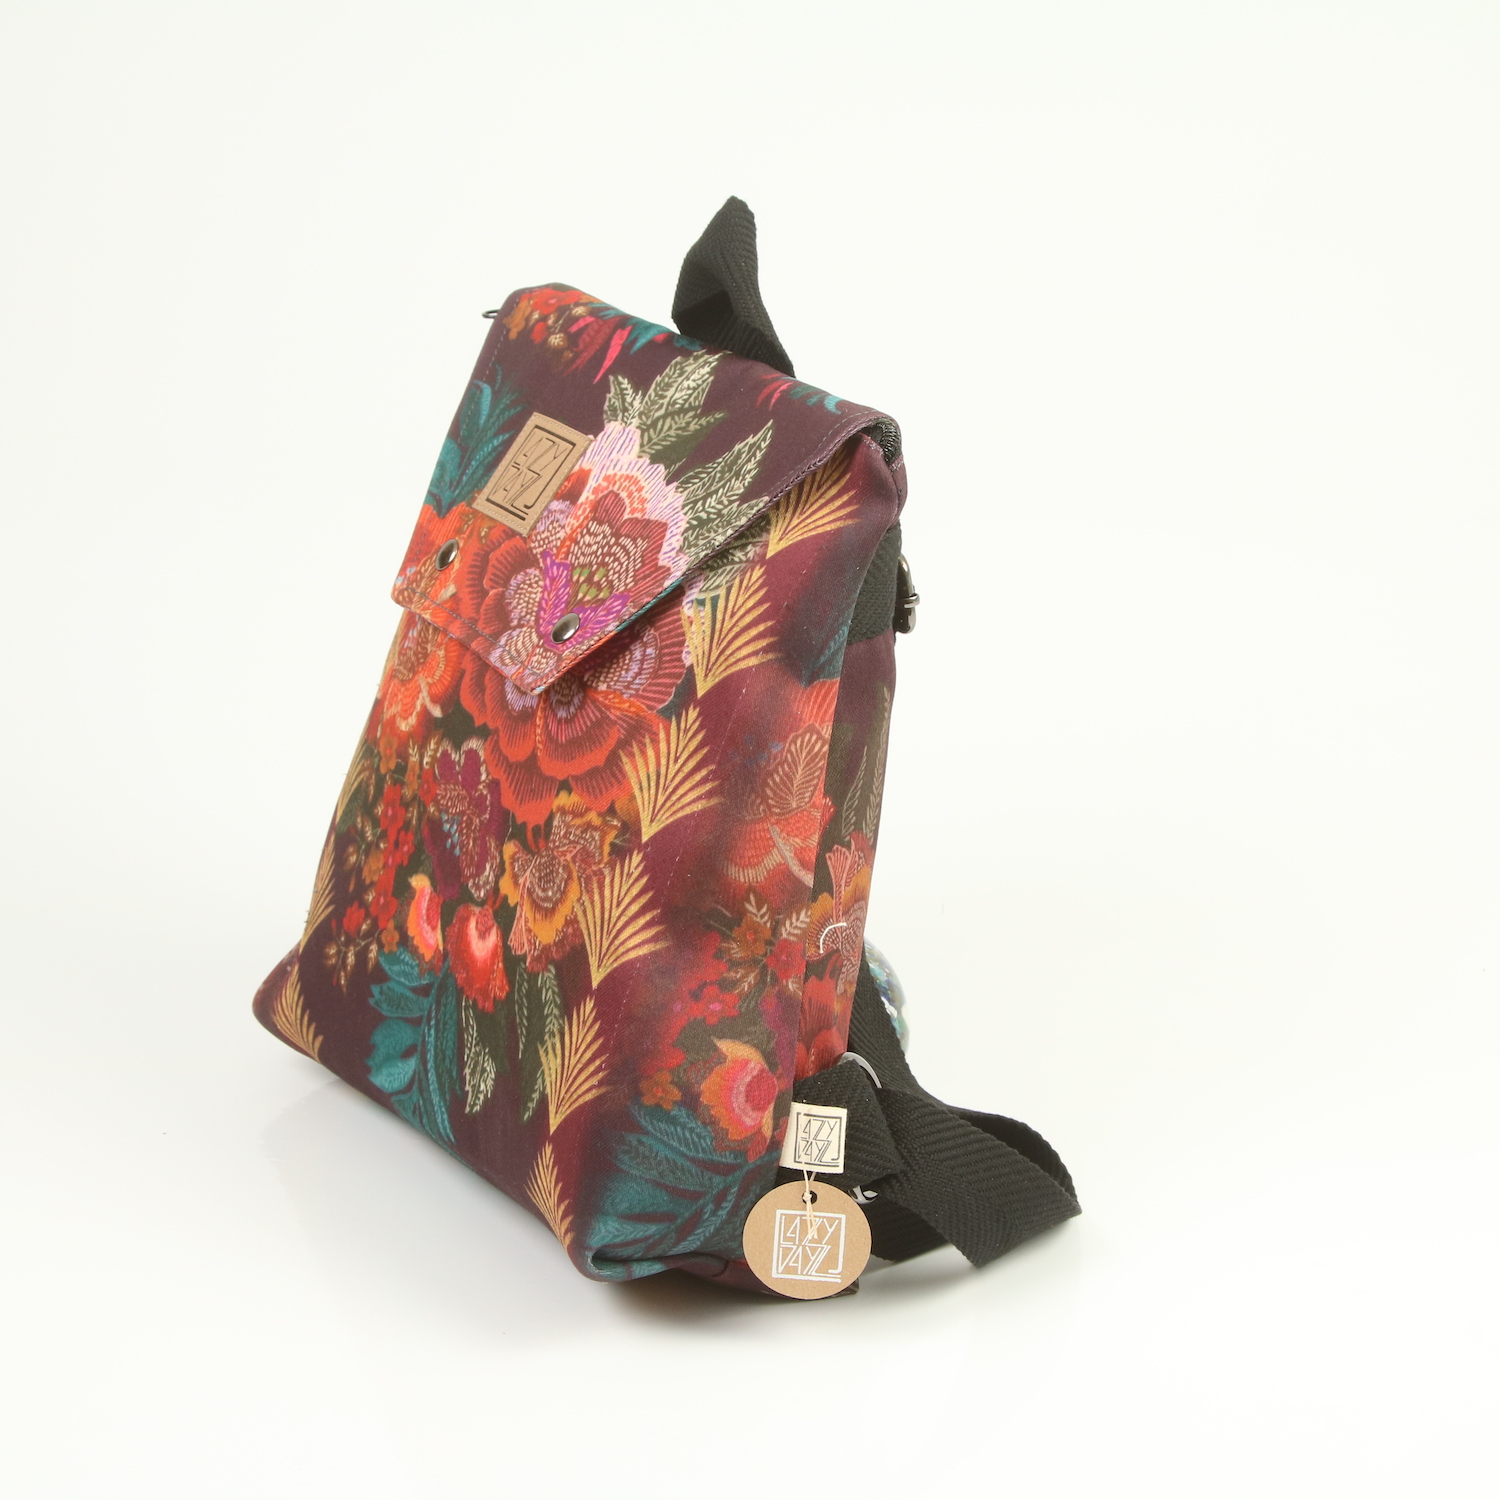 LazyDayz Designs Backpack γυναικείος σάκος πλάτης χειροποίητος bb0303b